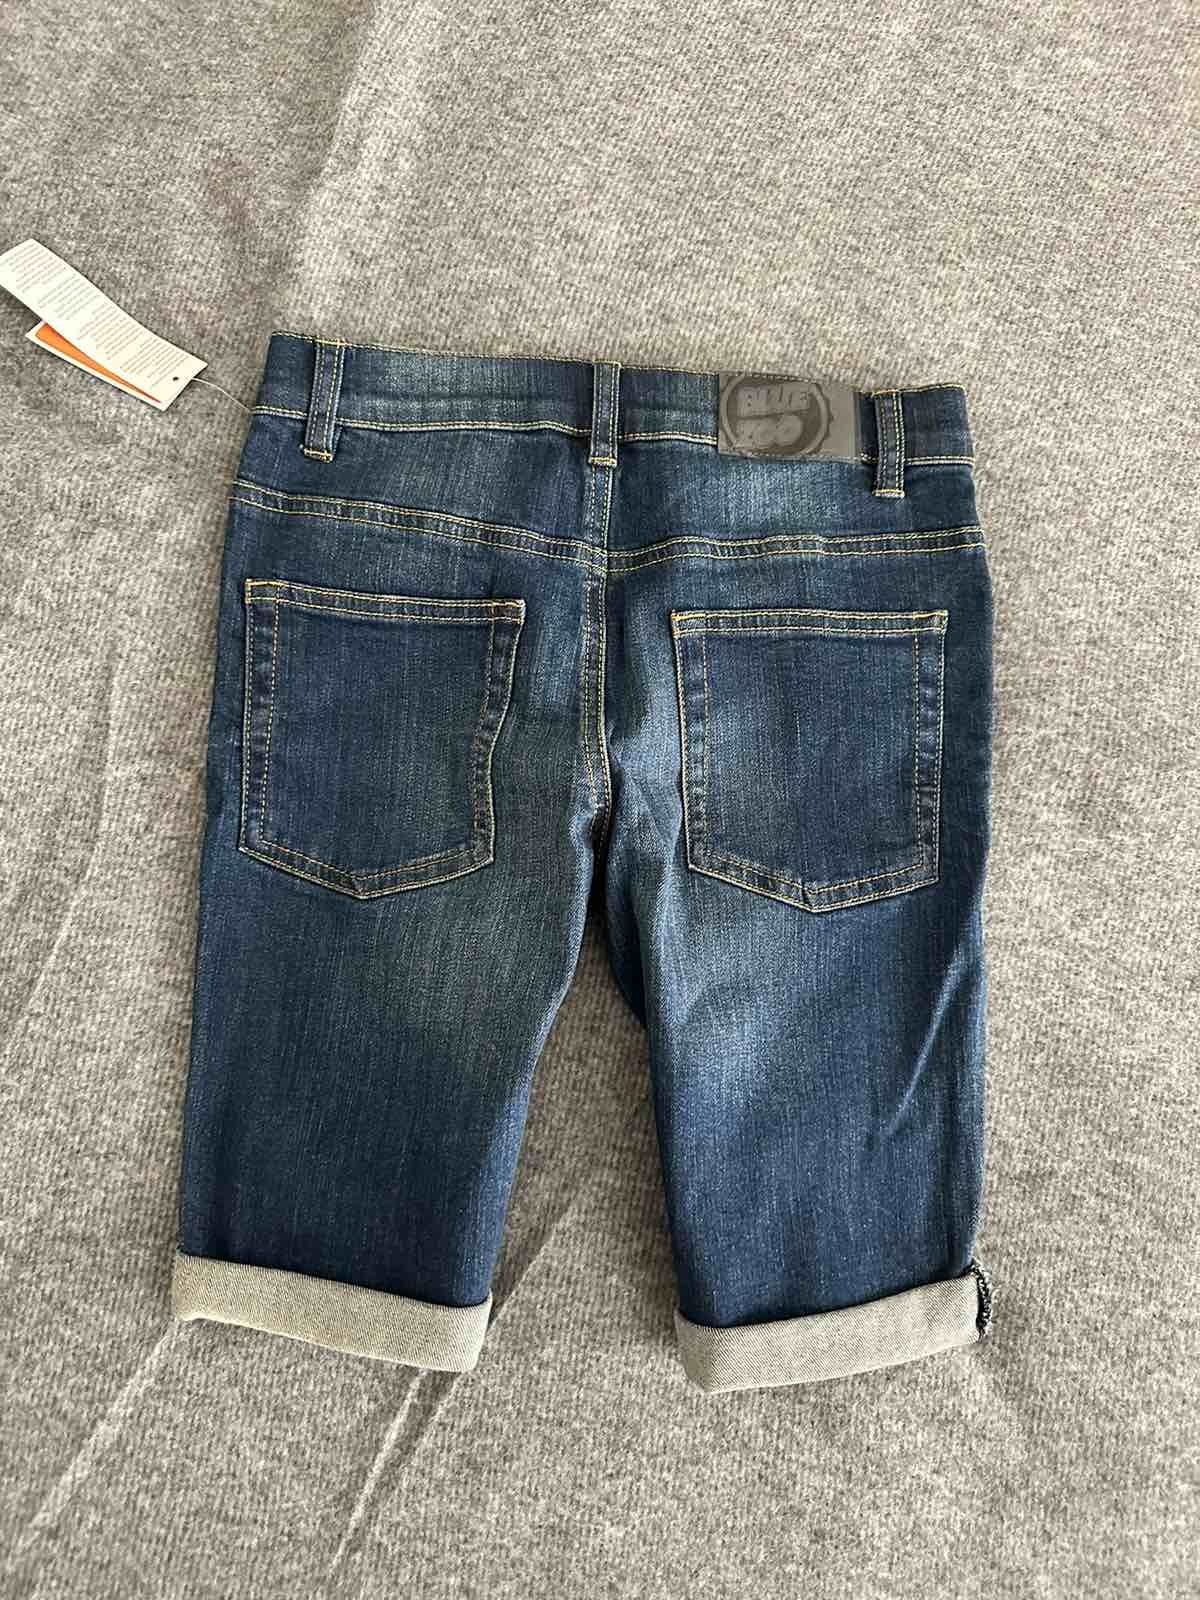 Фирменные джинсовые форты на мальчика 10 лет